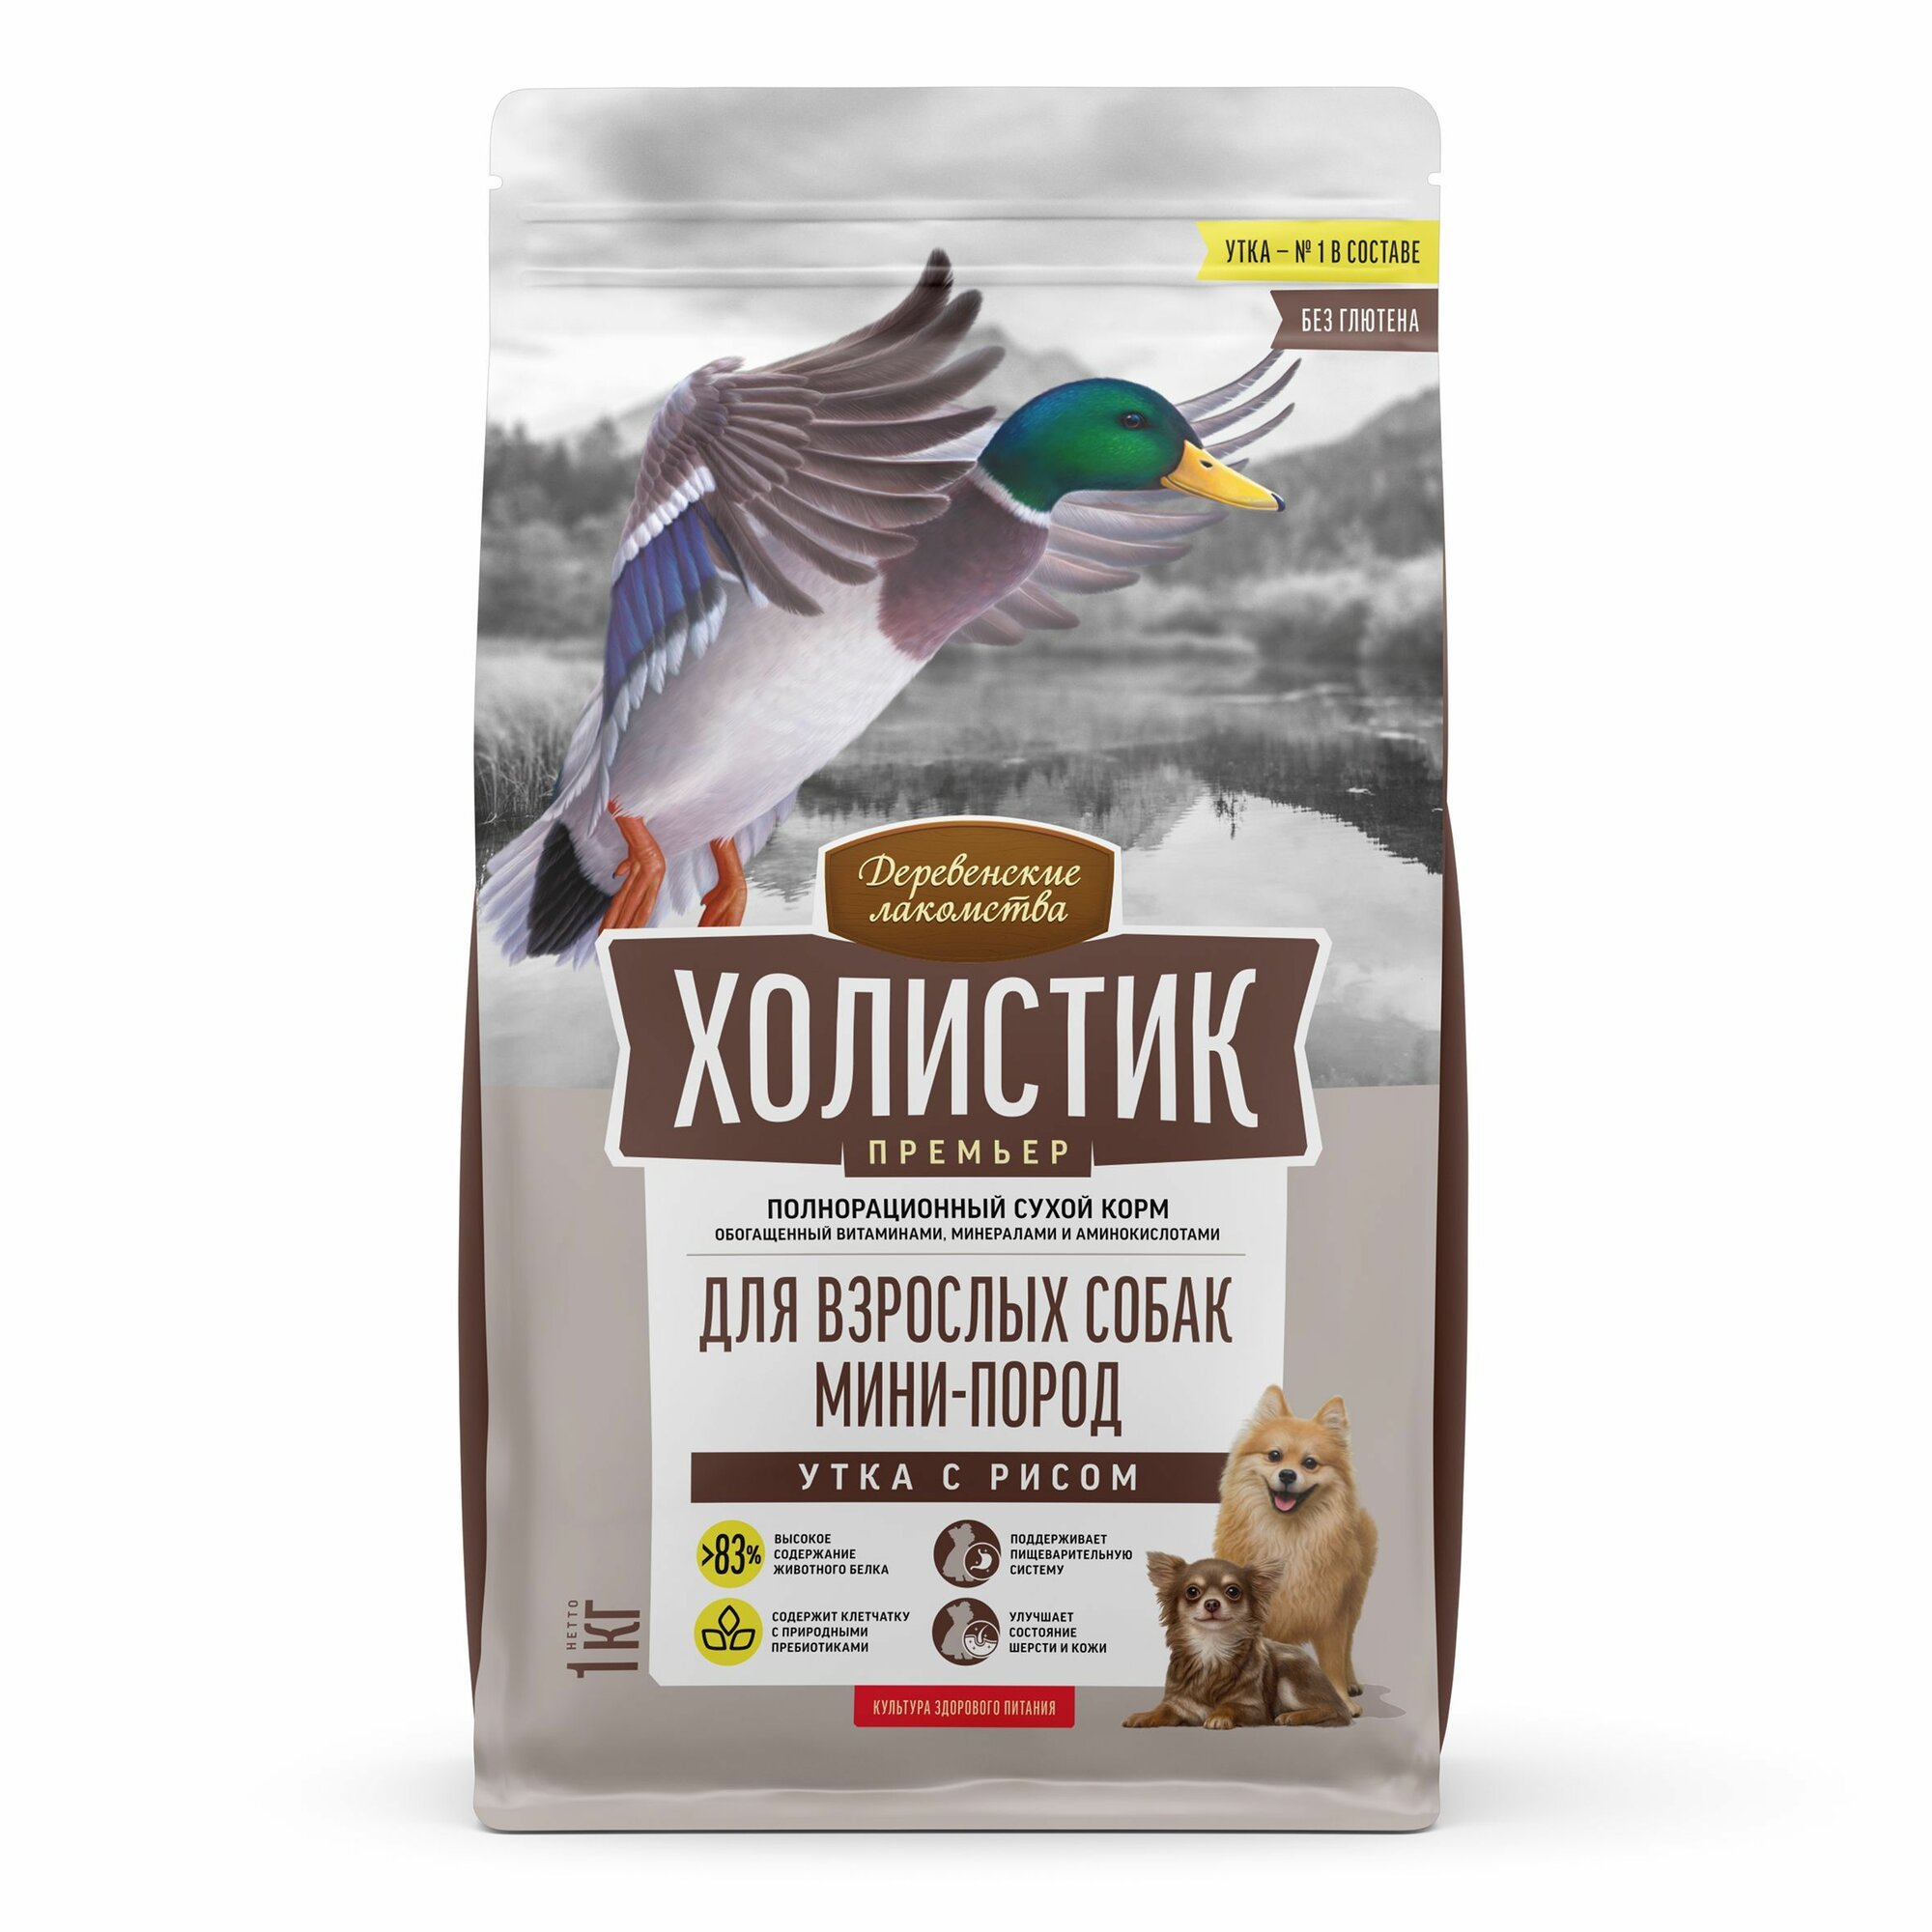 Сухой корм "Деревенские лакомства Холистик Премьер" для собак мини-пород, утка с рисом, 1 кг